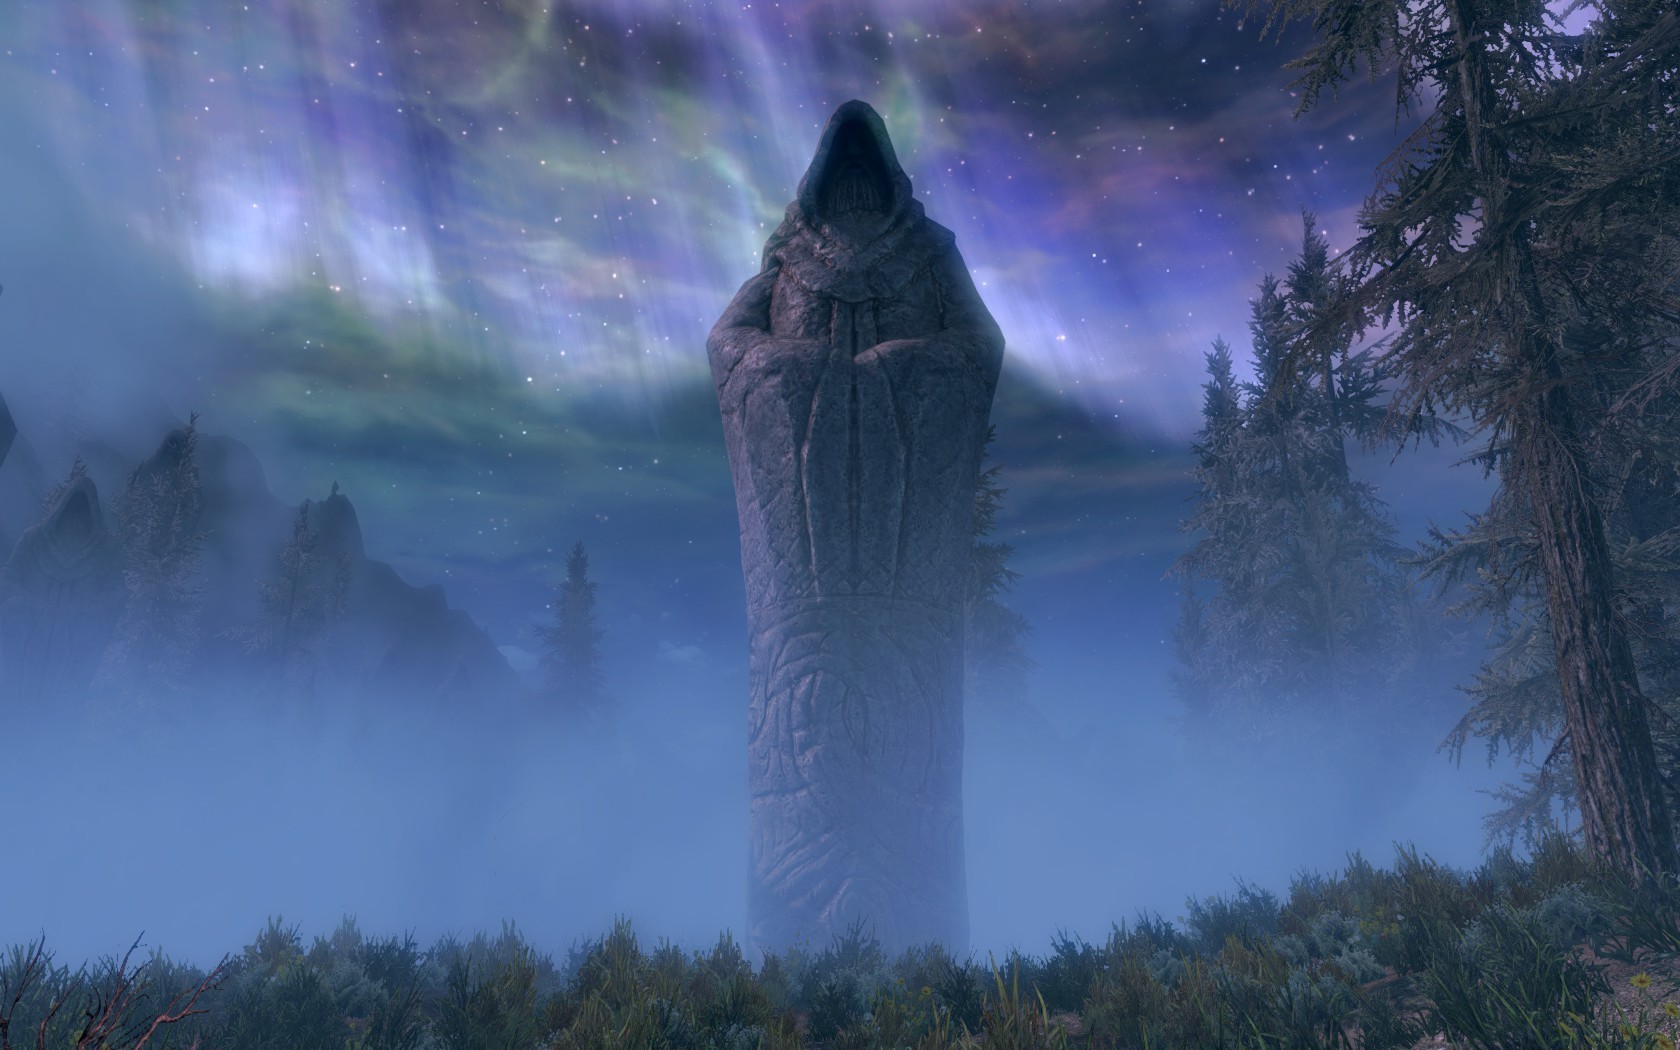 The Elder Scrolls V: Skyrim Wallpaper